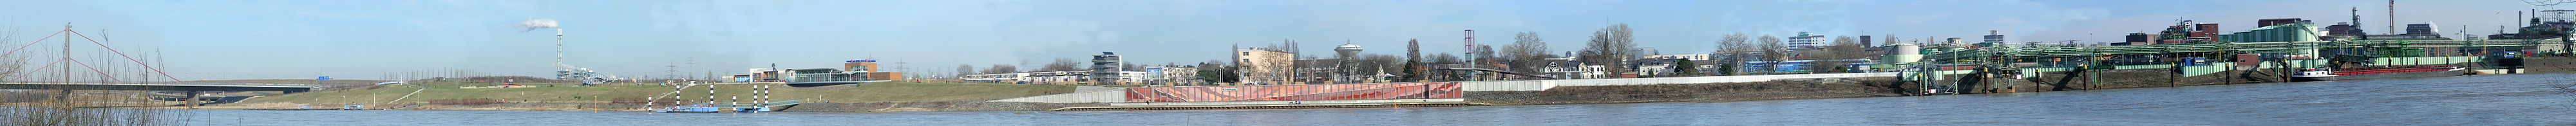 Blick auf Wiesdorf von der gegenüberliegenden Rheinseite aus. Von links: Rheinbrücke der A 1, Neulandpark, Wohngebiete, Chempark (Bayer-Werk)